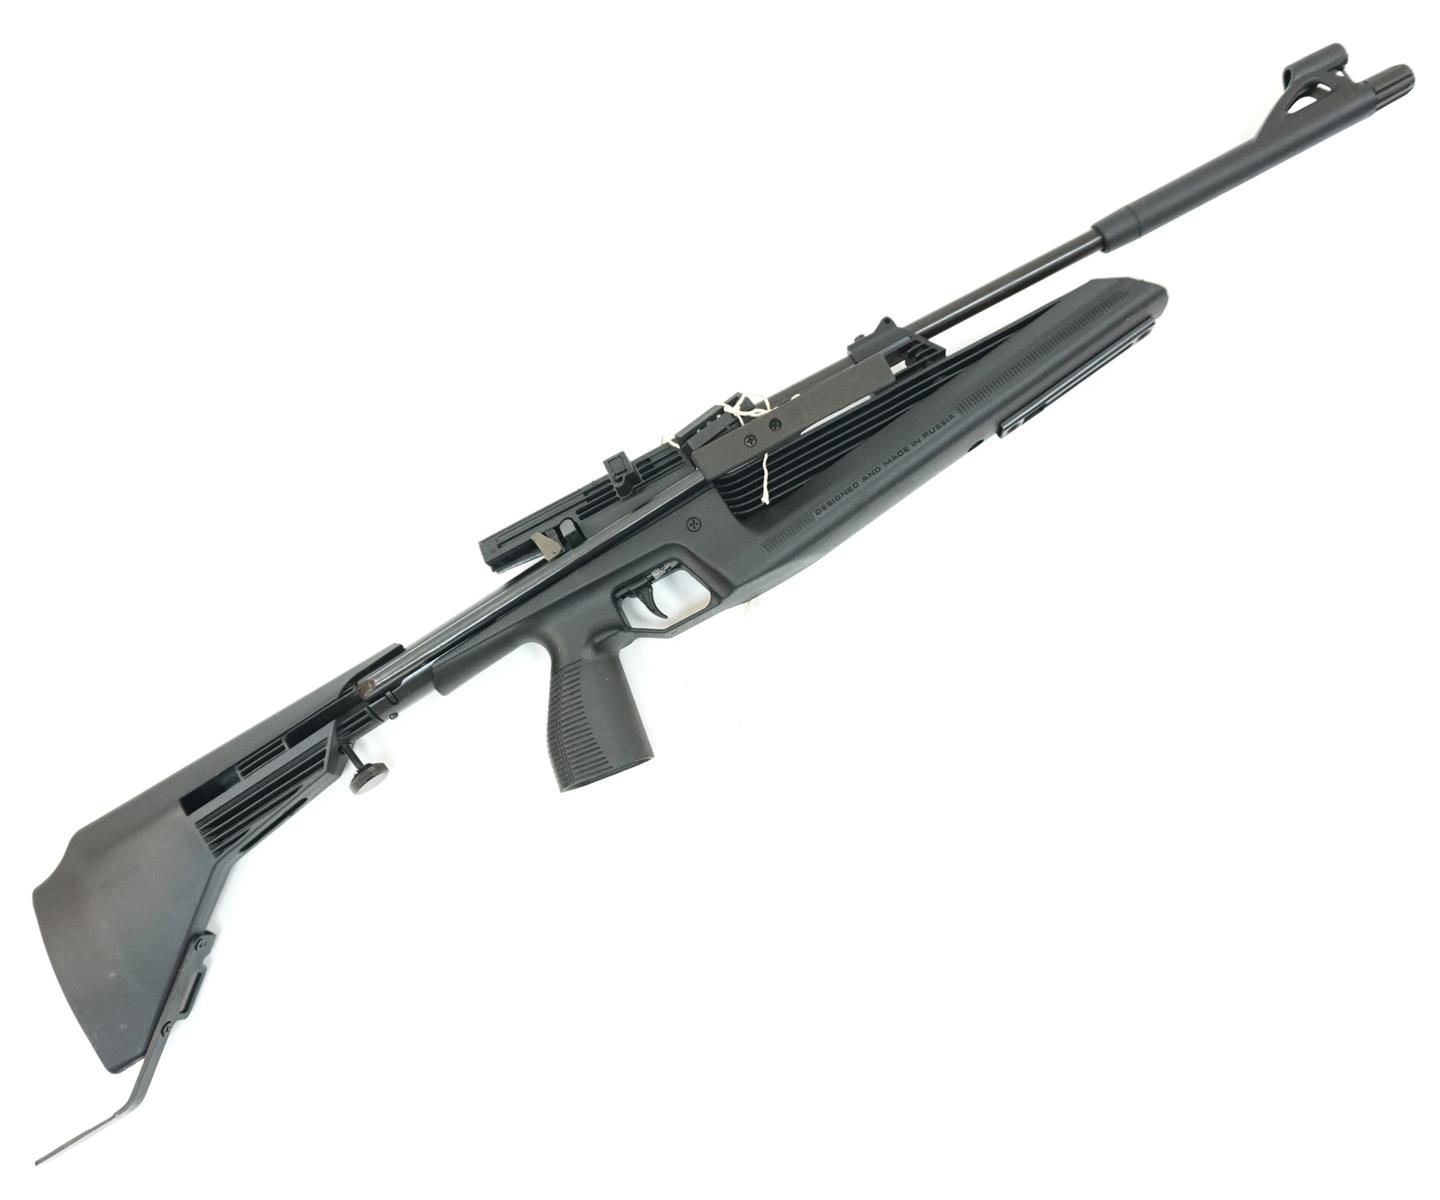 винтовка пневм.мр-61-09 винтовка пневм. (биатлон)   кал.4,5мм., вес 2,3 кг., фото